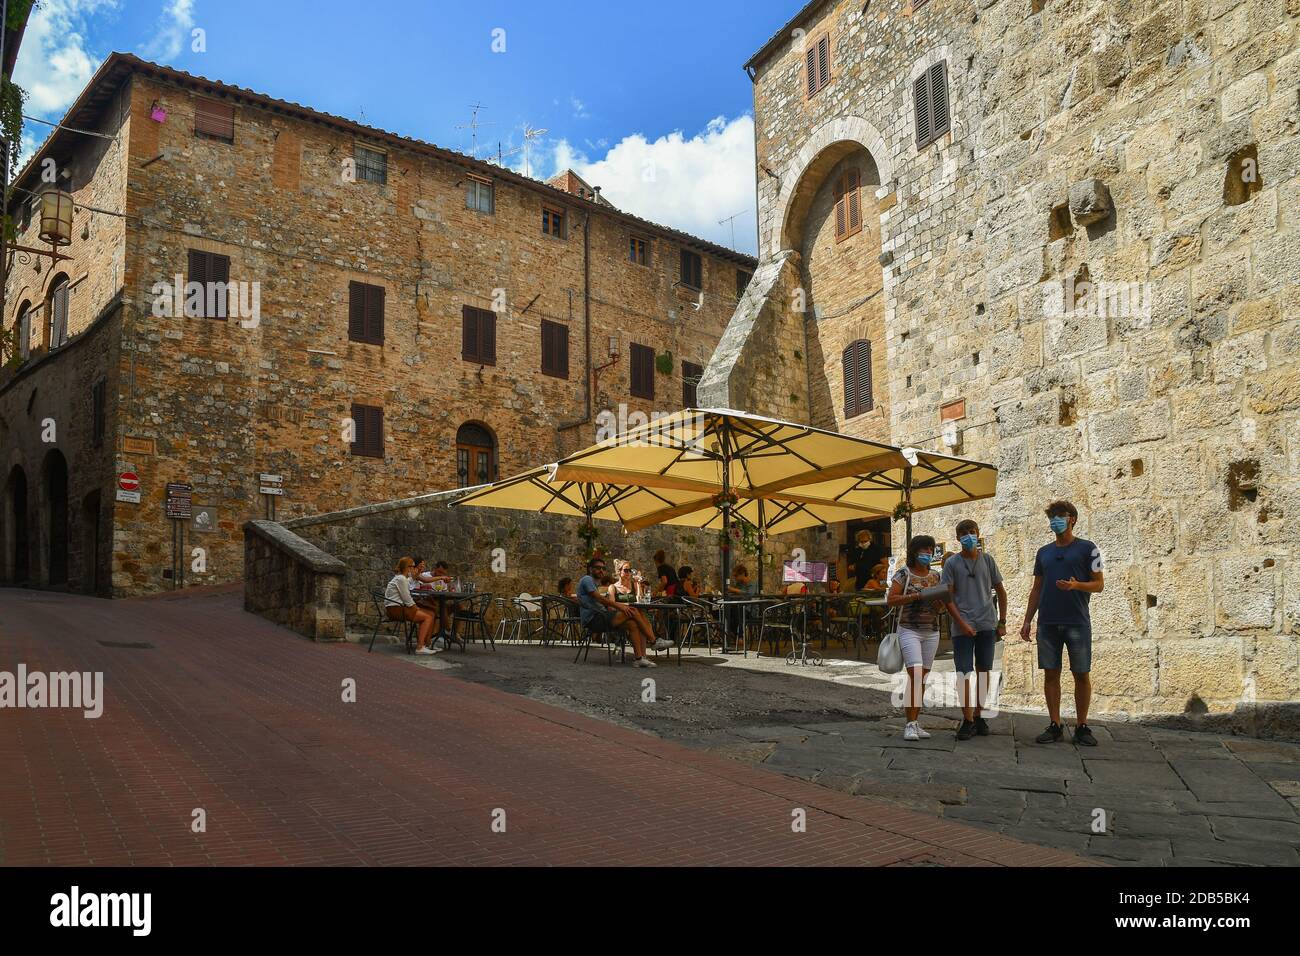 Aperçu du village médiéval de San Gimignano, site classé au patrimoine mondial de l'UNESCO, avec des gens et des touristes dans un café en plein air, Sienne, Toscane, Italie Banque D'Images